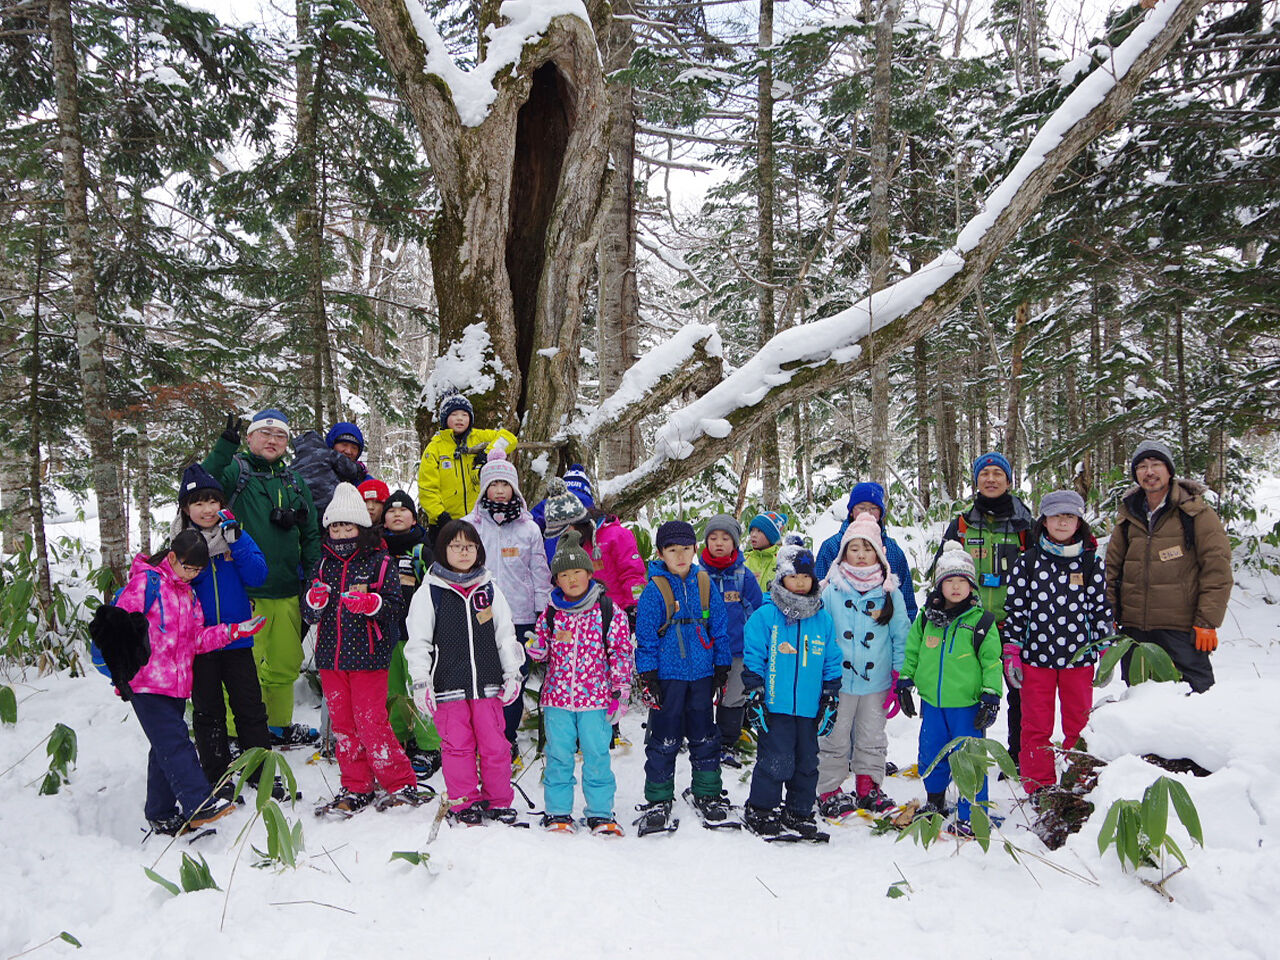 雪の中ミズナラの木の前で子どもたちが集まっている画像